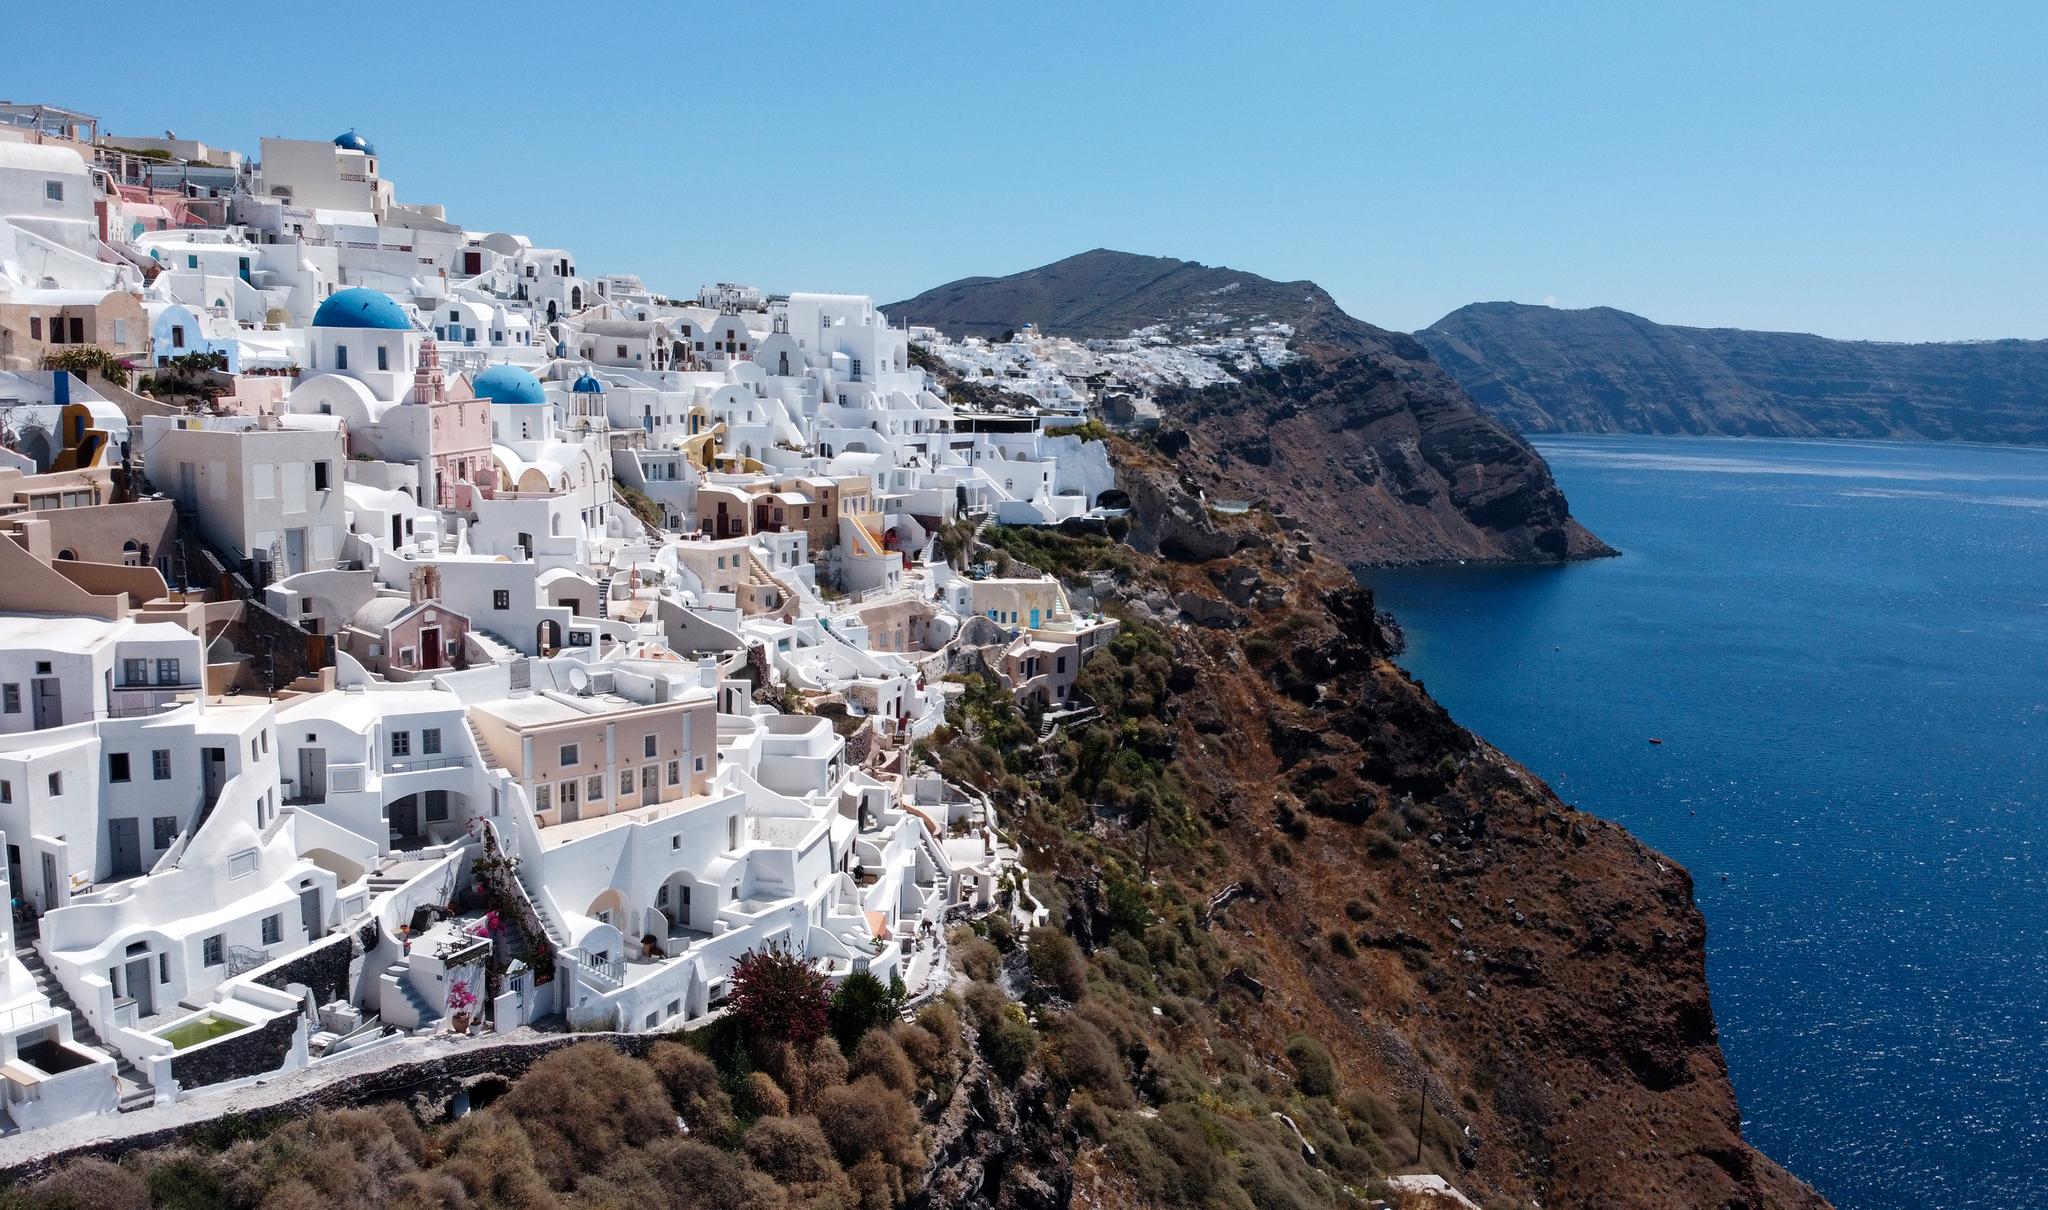 På den greske øya Santorini er Airbnb-utleie blitt en stor utfordring for lokalbefolkningen på grunn av en betydelig økning i kortsiktige utleieboliger, skriver Tor W. Andreassen.